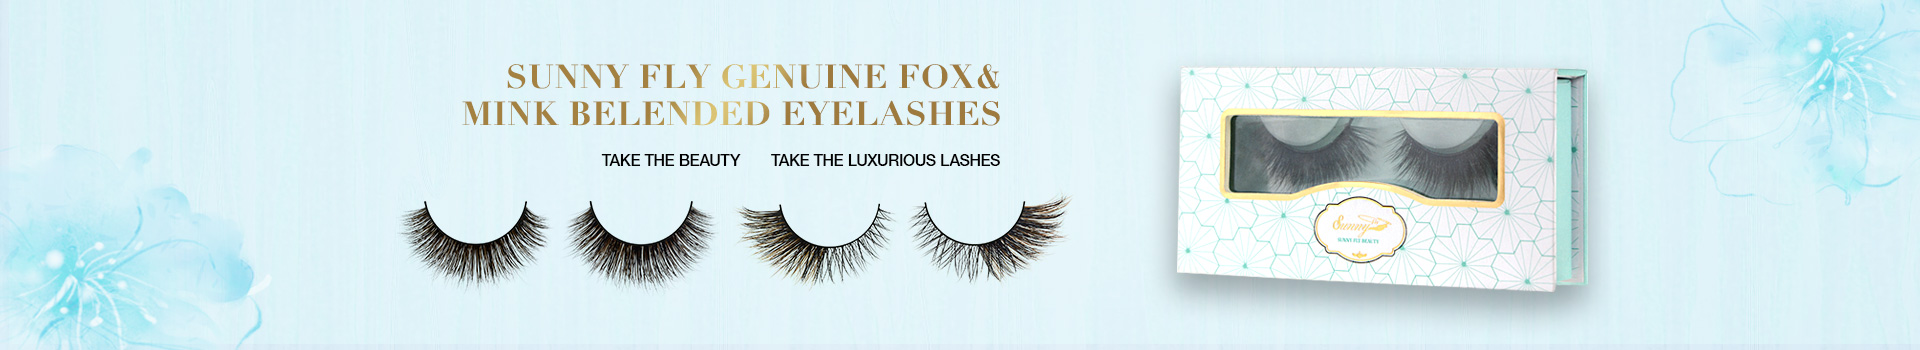 Fox & Mink Fur Blended Eyelashes FMB29